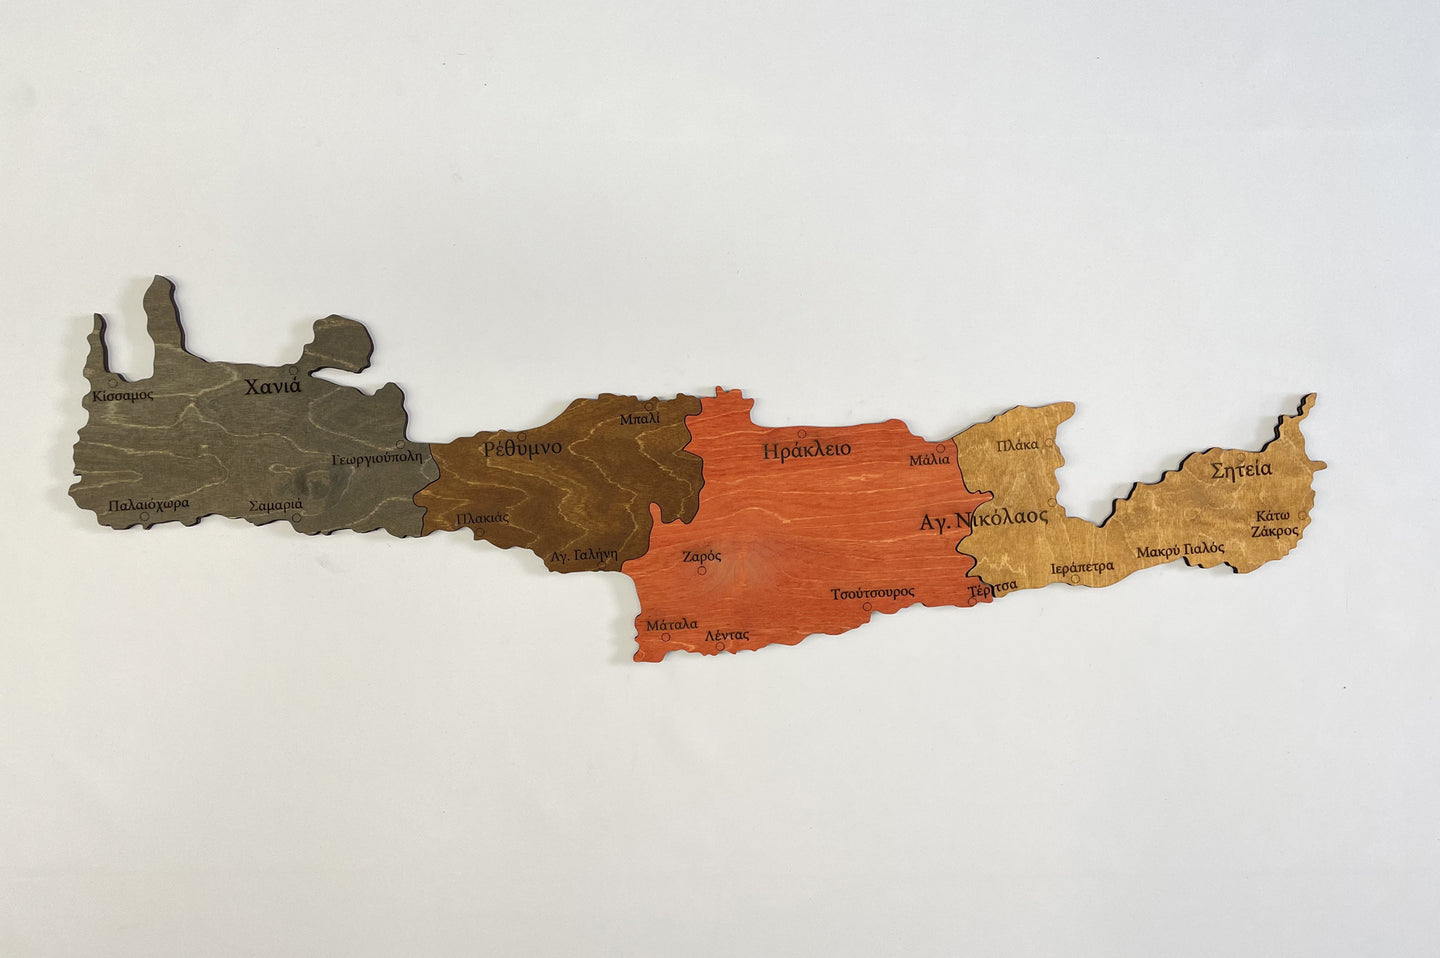 Ξύλινος χάρτης Κρήτης δύο επιπέδων - 4 χρωμάτων